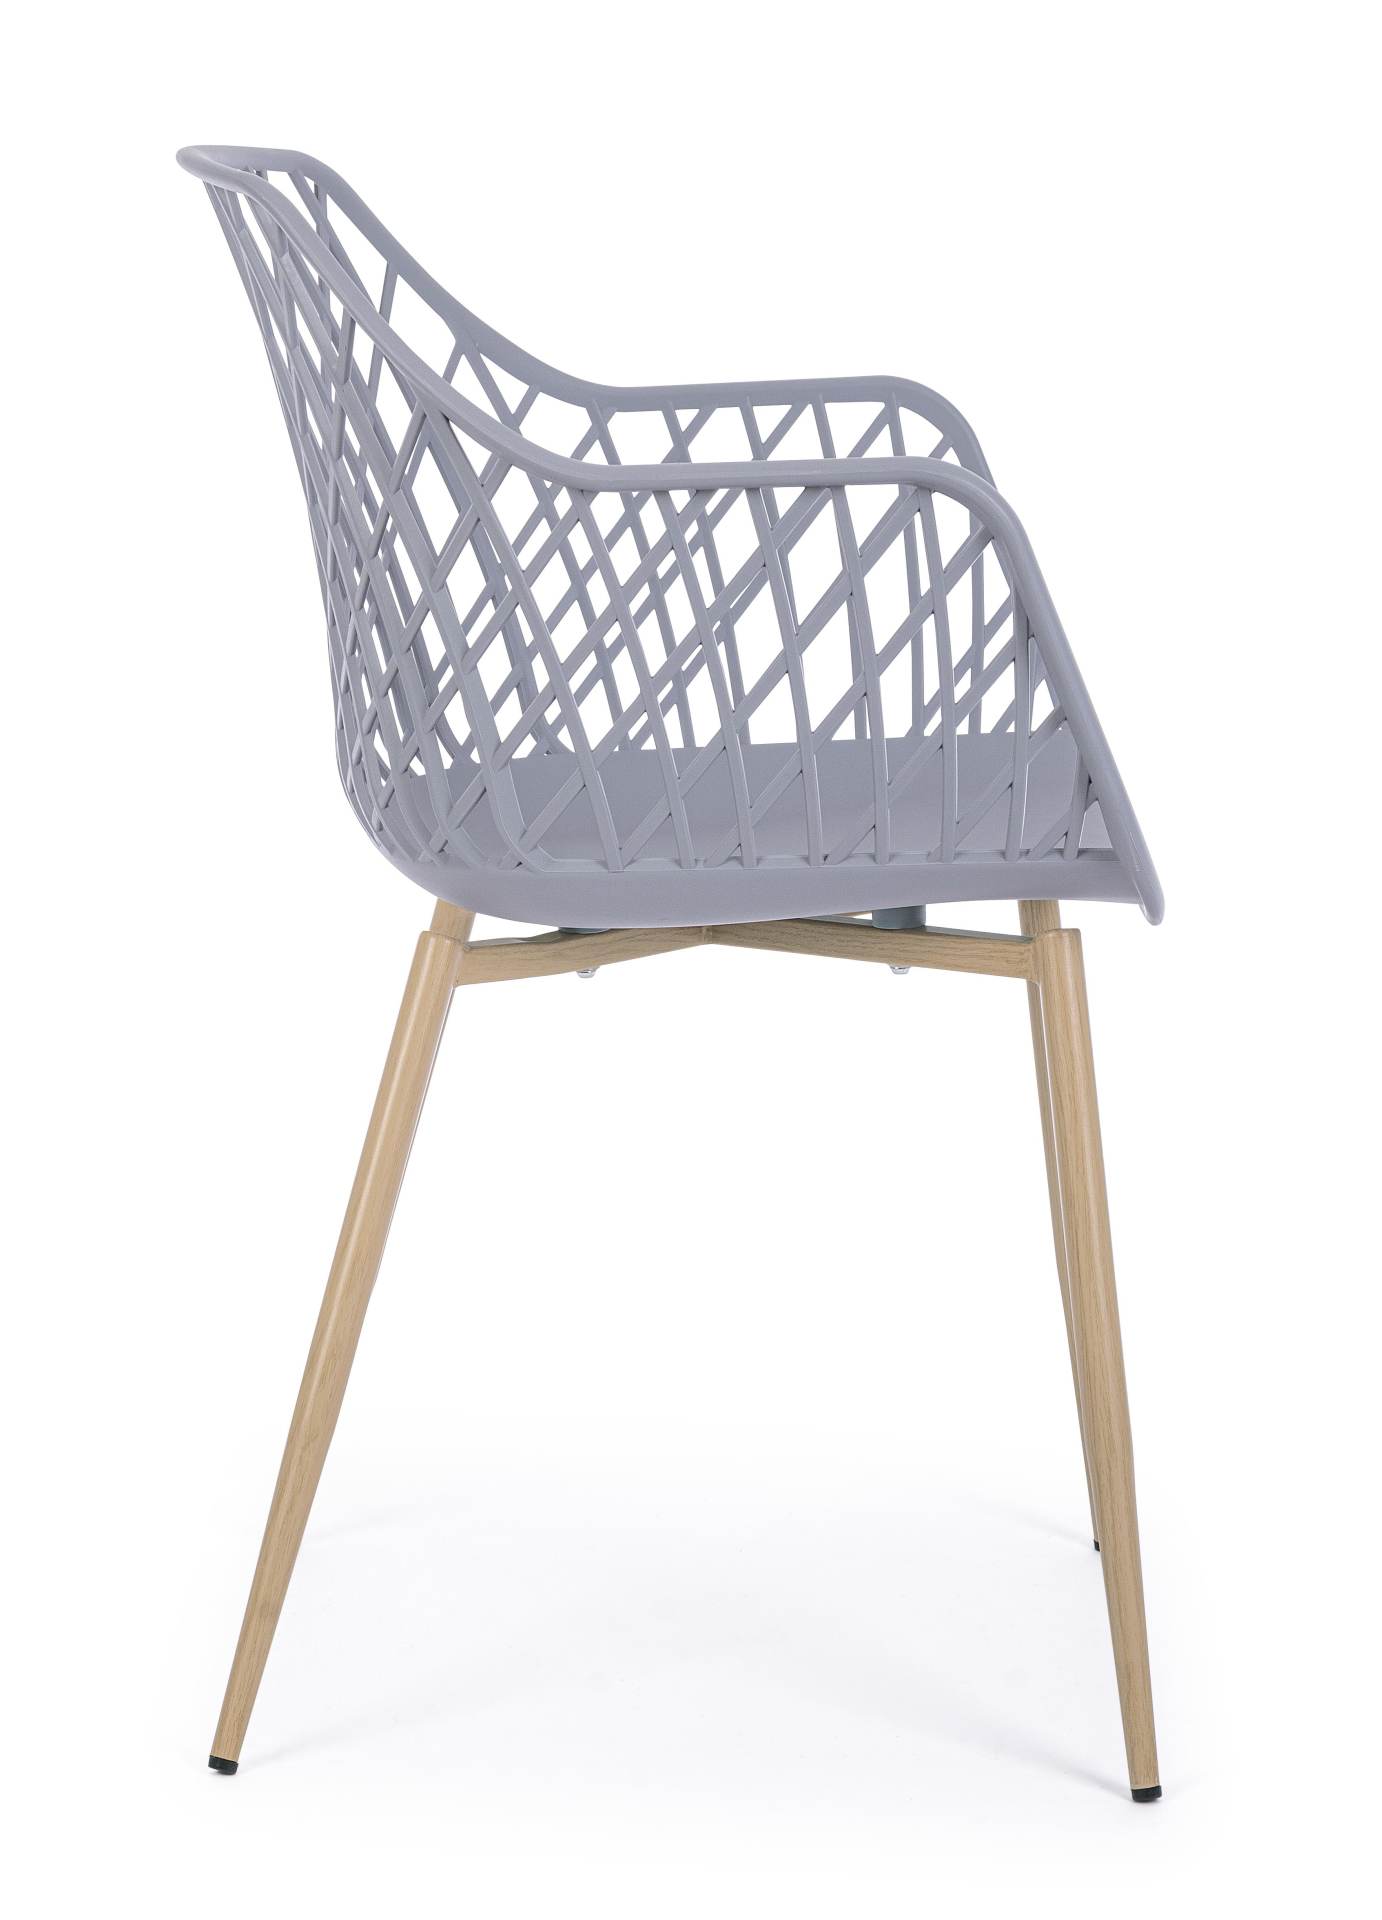 Der Stuhl Optik wurde aus Kunststoff gefertigt, welcher einen grauen Farbton besitzt. Das Gestell ist aus Metall und hat eine Holz-Optik. Das Design des Stuhls ist modern gehalten. Die Sitzhöhe beträgt 44 cm.